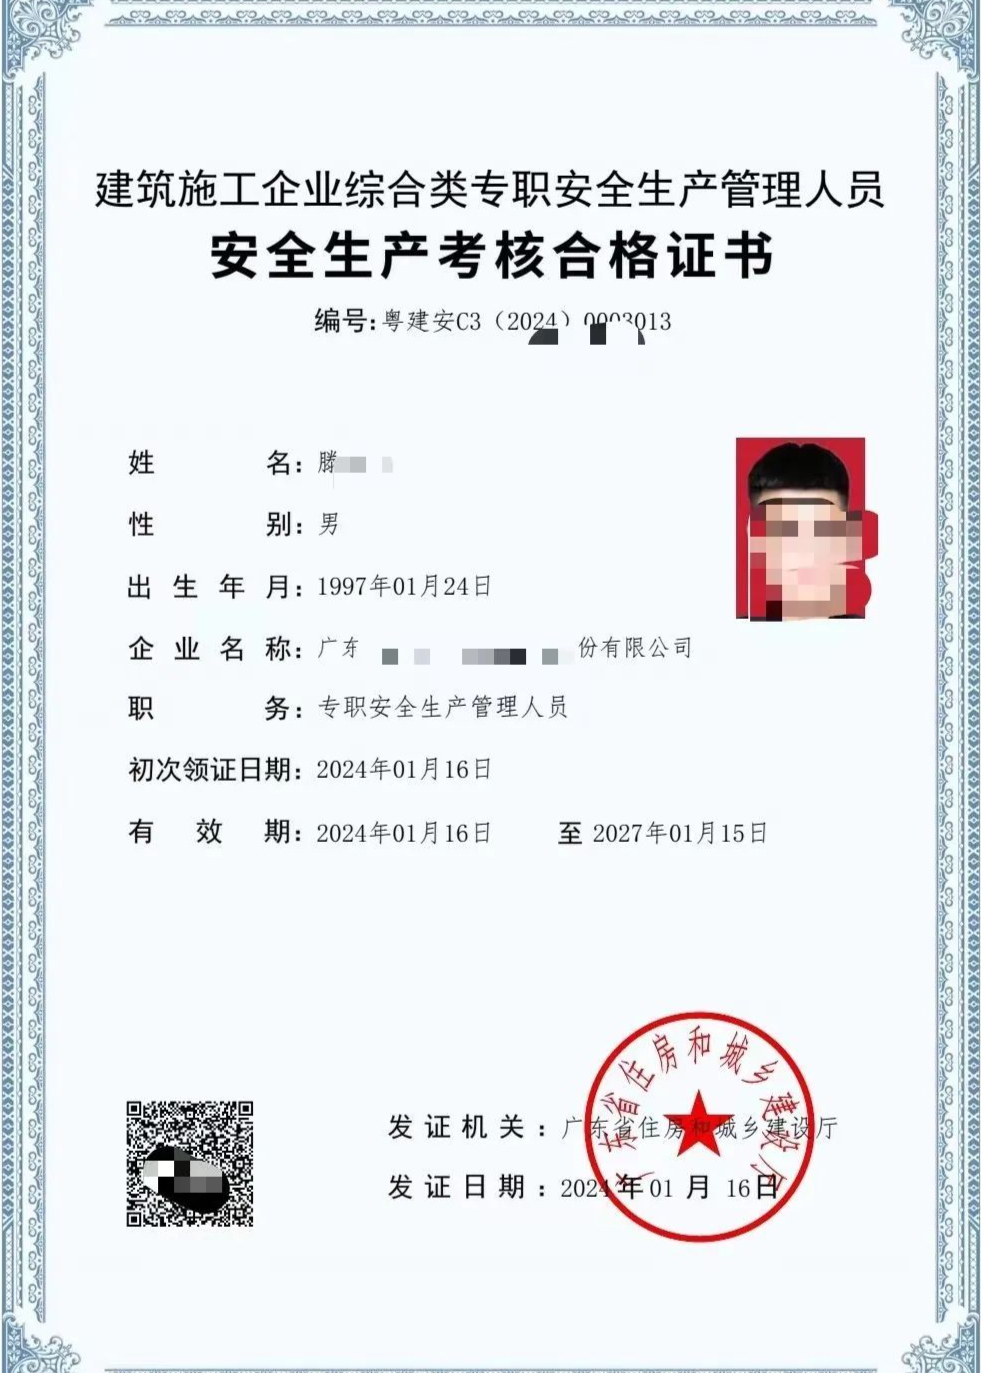 广东粤建安c证怎么报考啊在哪里报名深圳考试服务机构